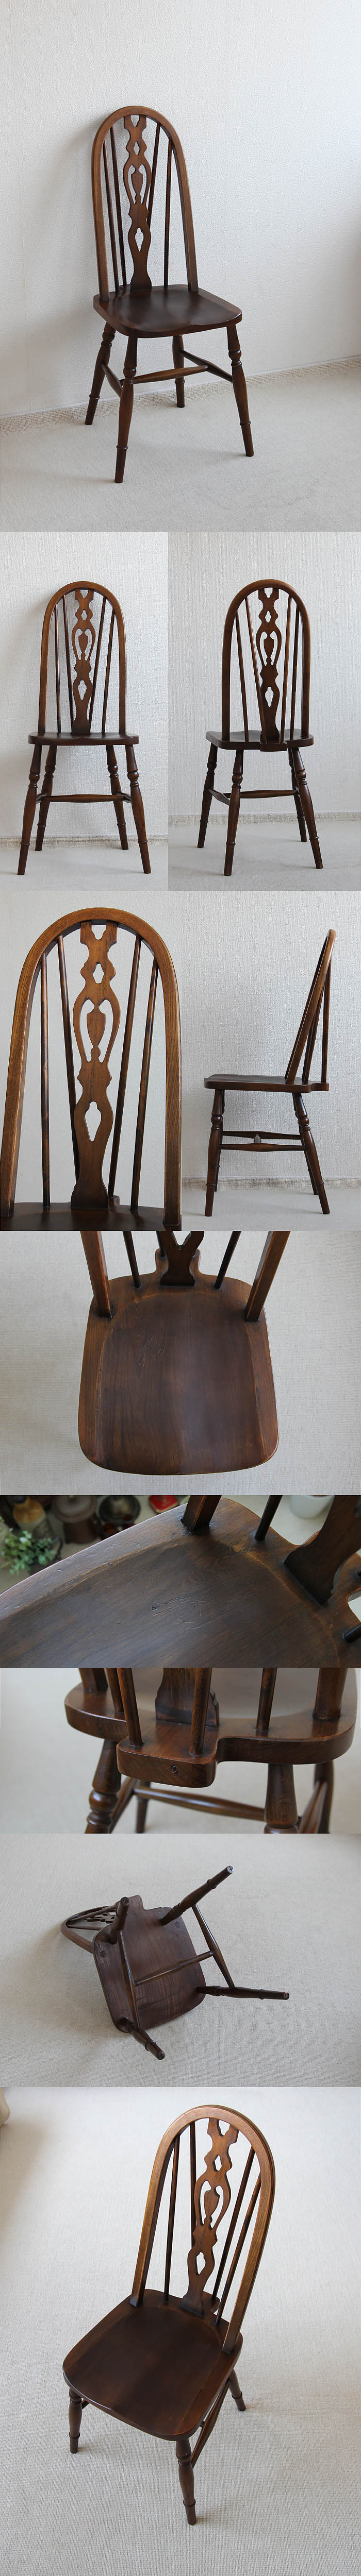 イギリス アンティーク調 ハイバックチェア 木製椅子 ダイニングチェア 家具「ウィンザースタイル」V-901